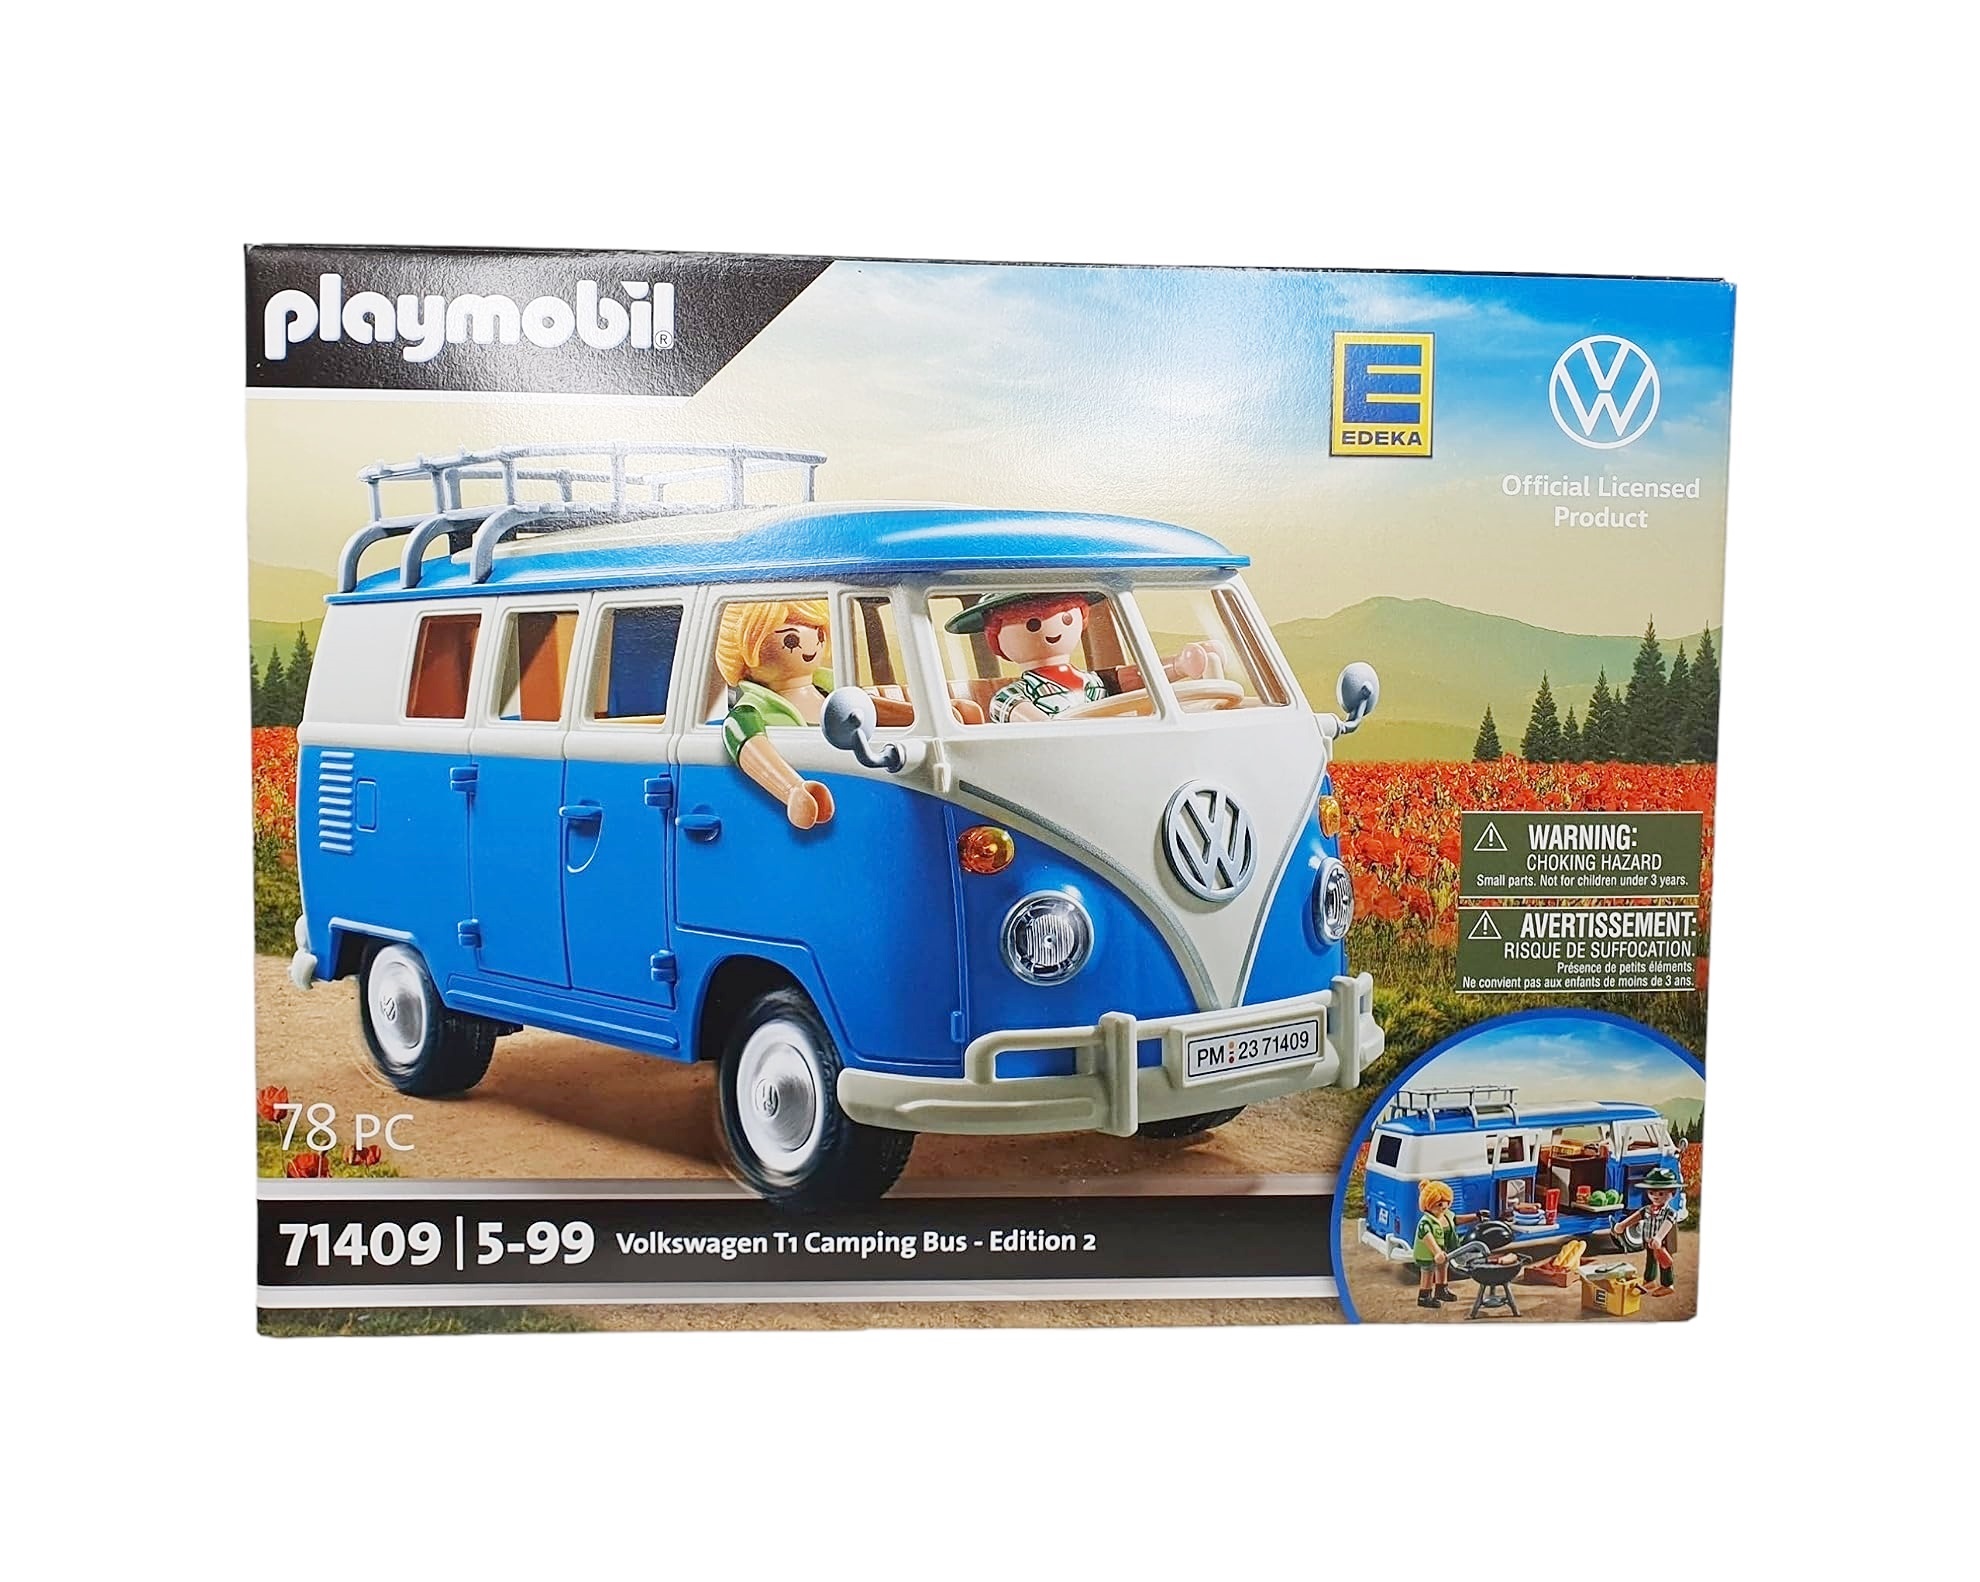 Unboxing Edeka Exclusivité Playmobil Volkswagen T2 Bus Van Combi jaune 